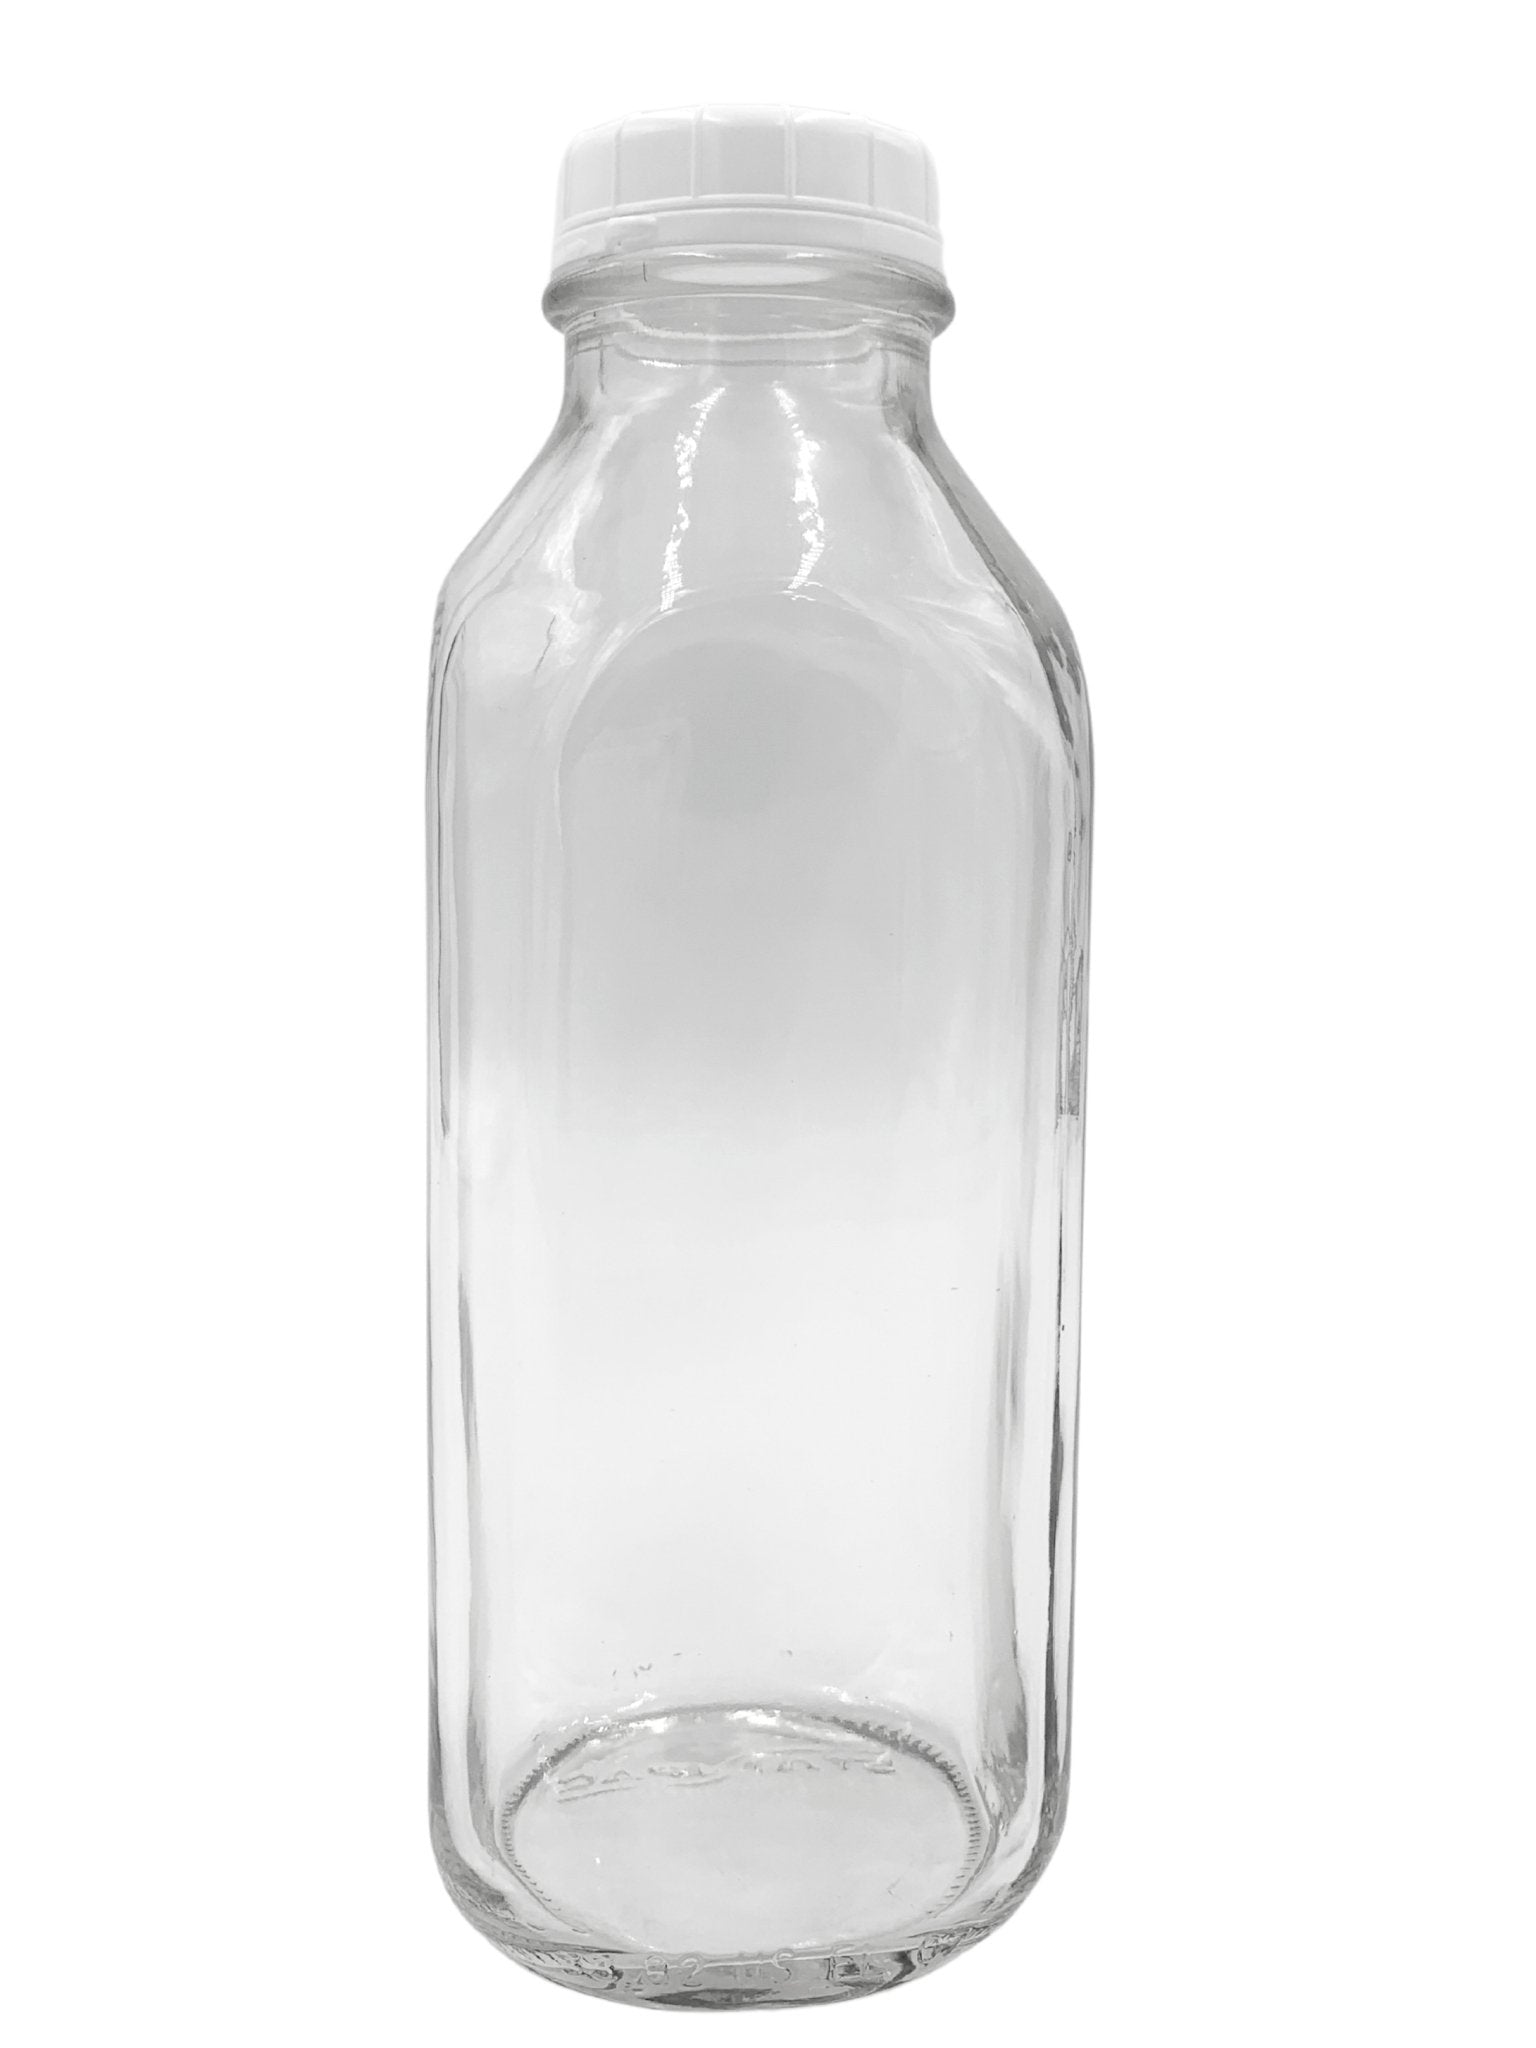 https://betterbeveragebottles.com/cdn/shop/products/one-liter-338-oz-square-milk-bottles-case-of-12-447114_1536x.jpg?v=1698255810